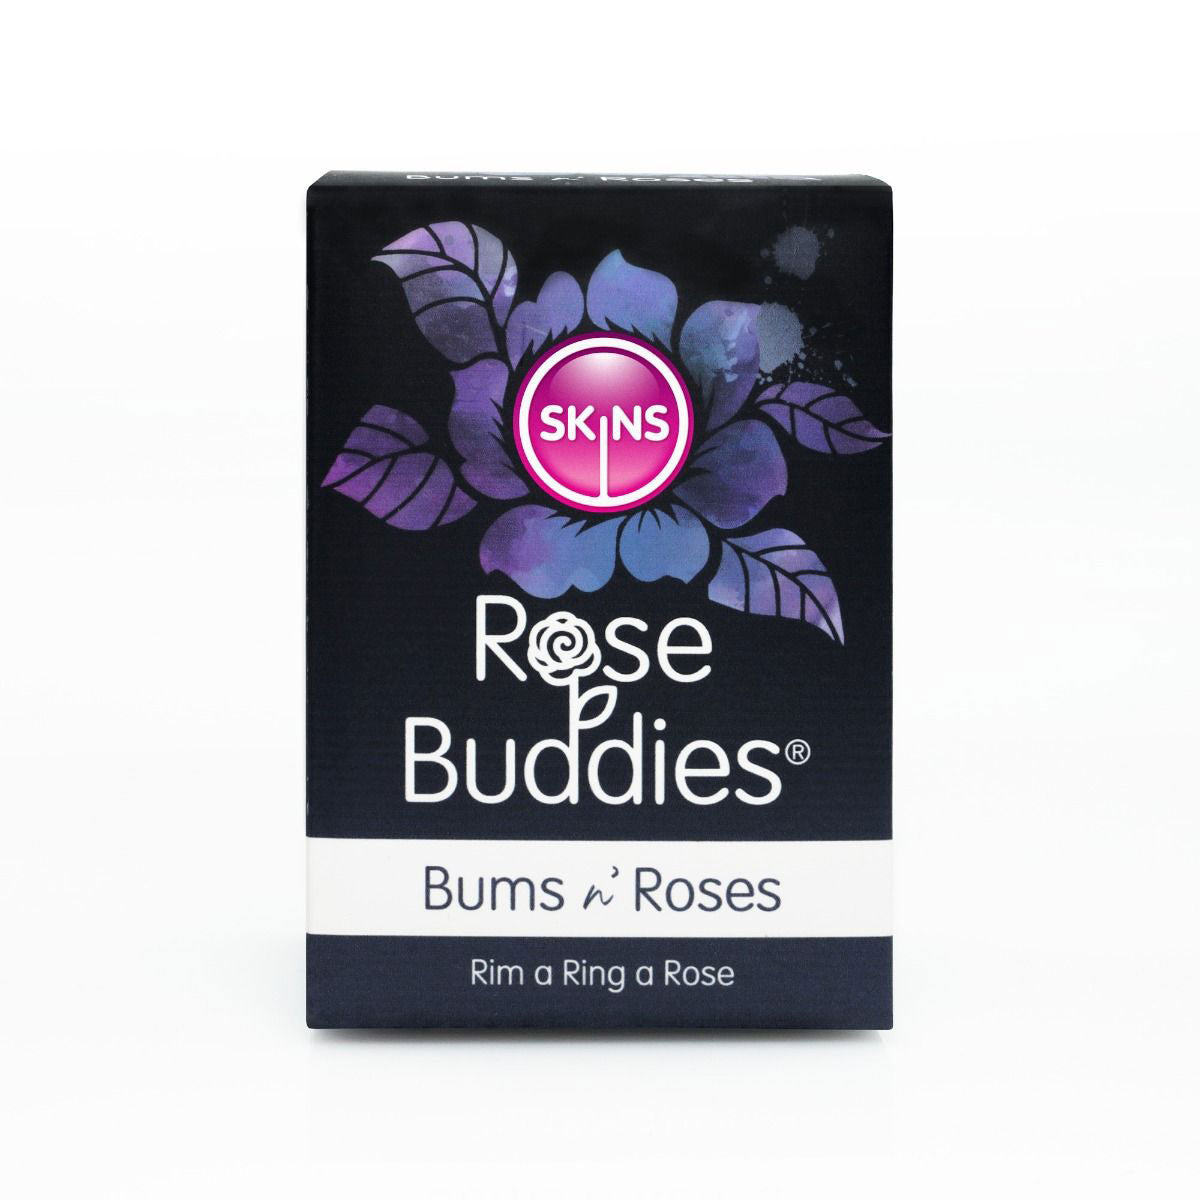 Skins Rose Buddies -the Bums N Rose - Black